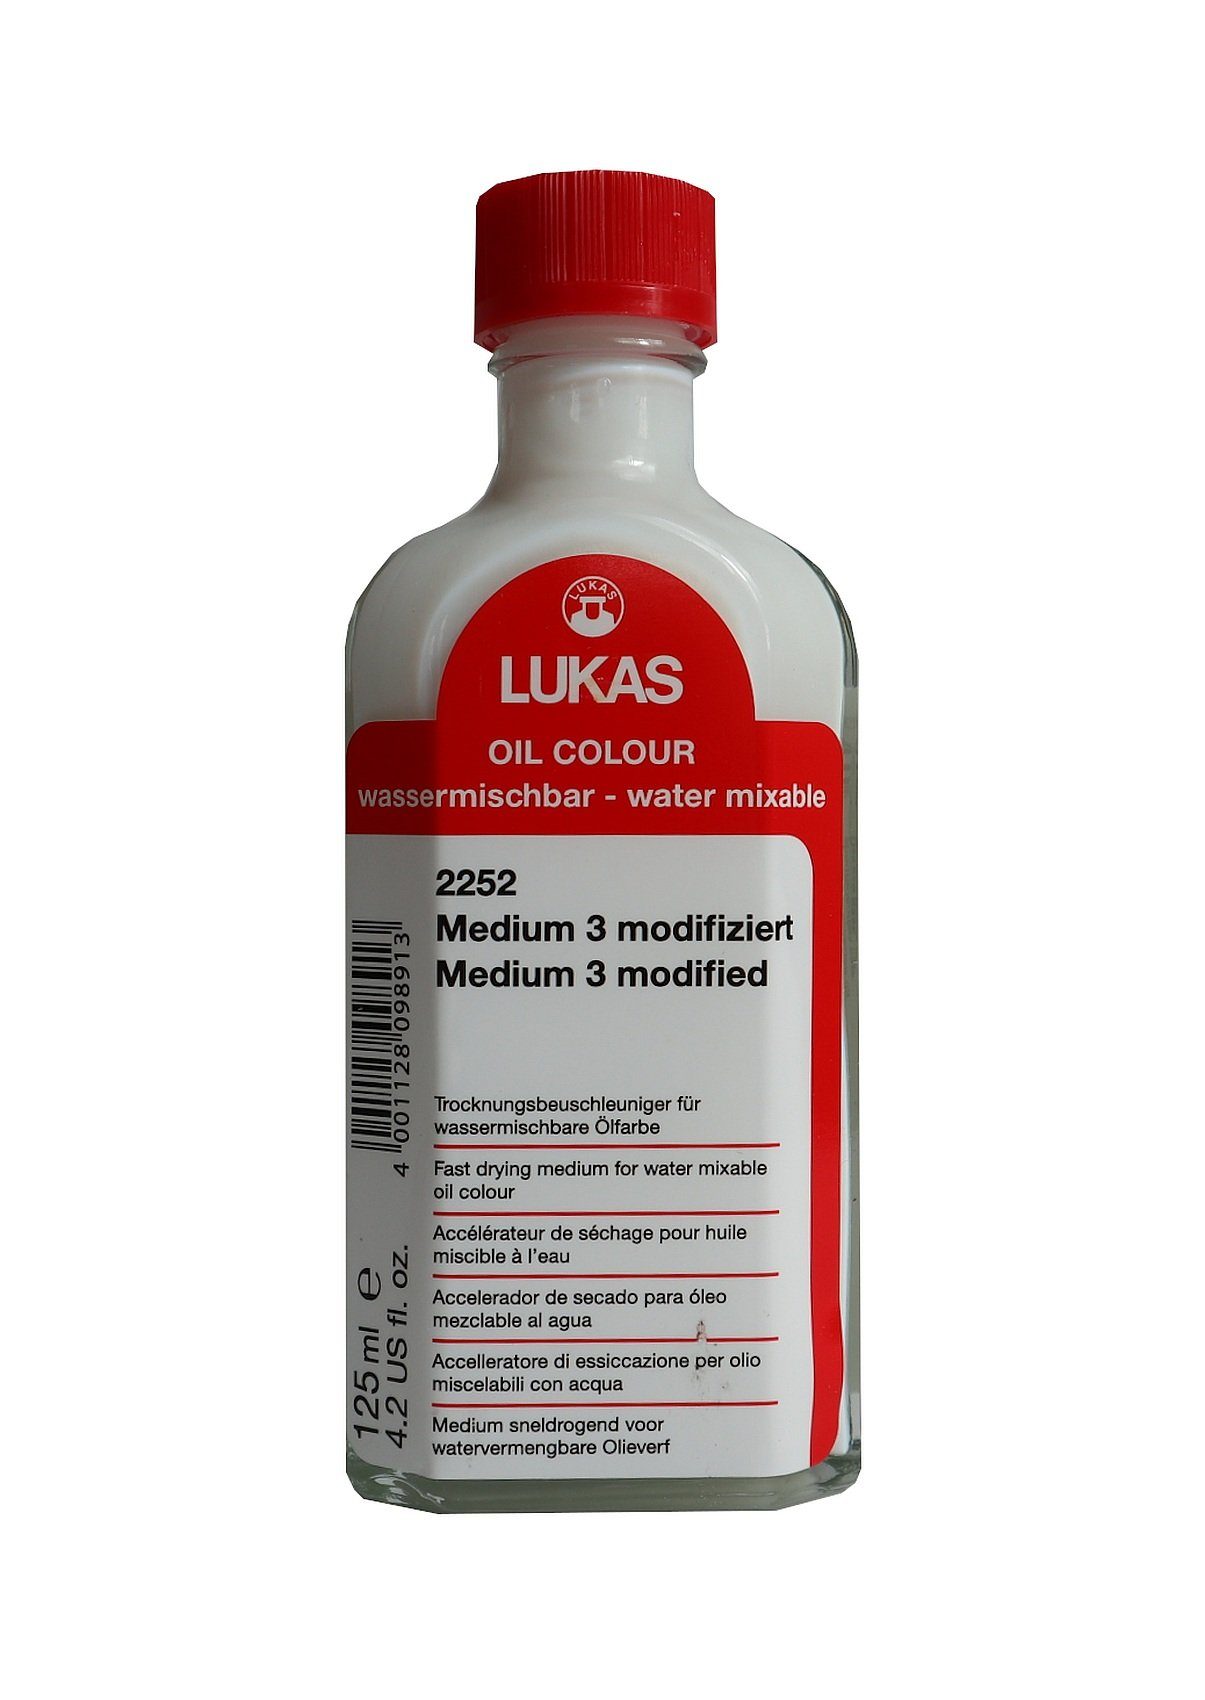 ml LUKAS Firnis modifiziert 3 Medium GmbH 125 - Lukas-Nerchau